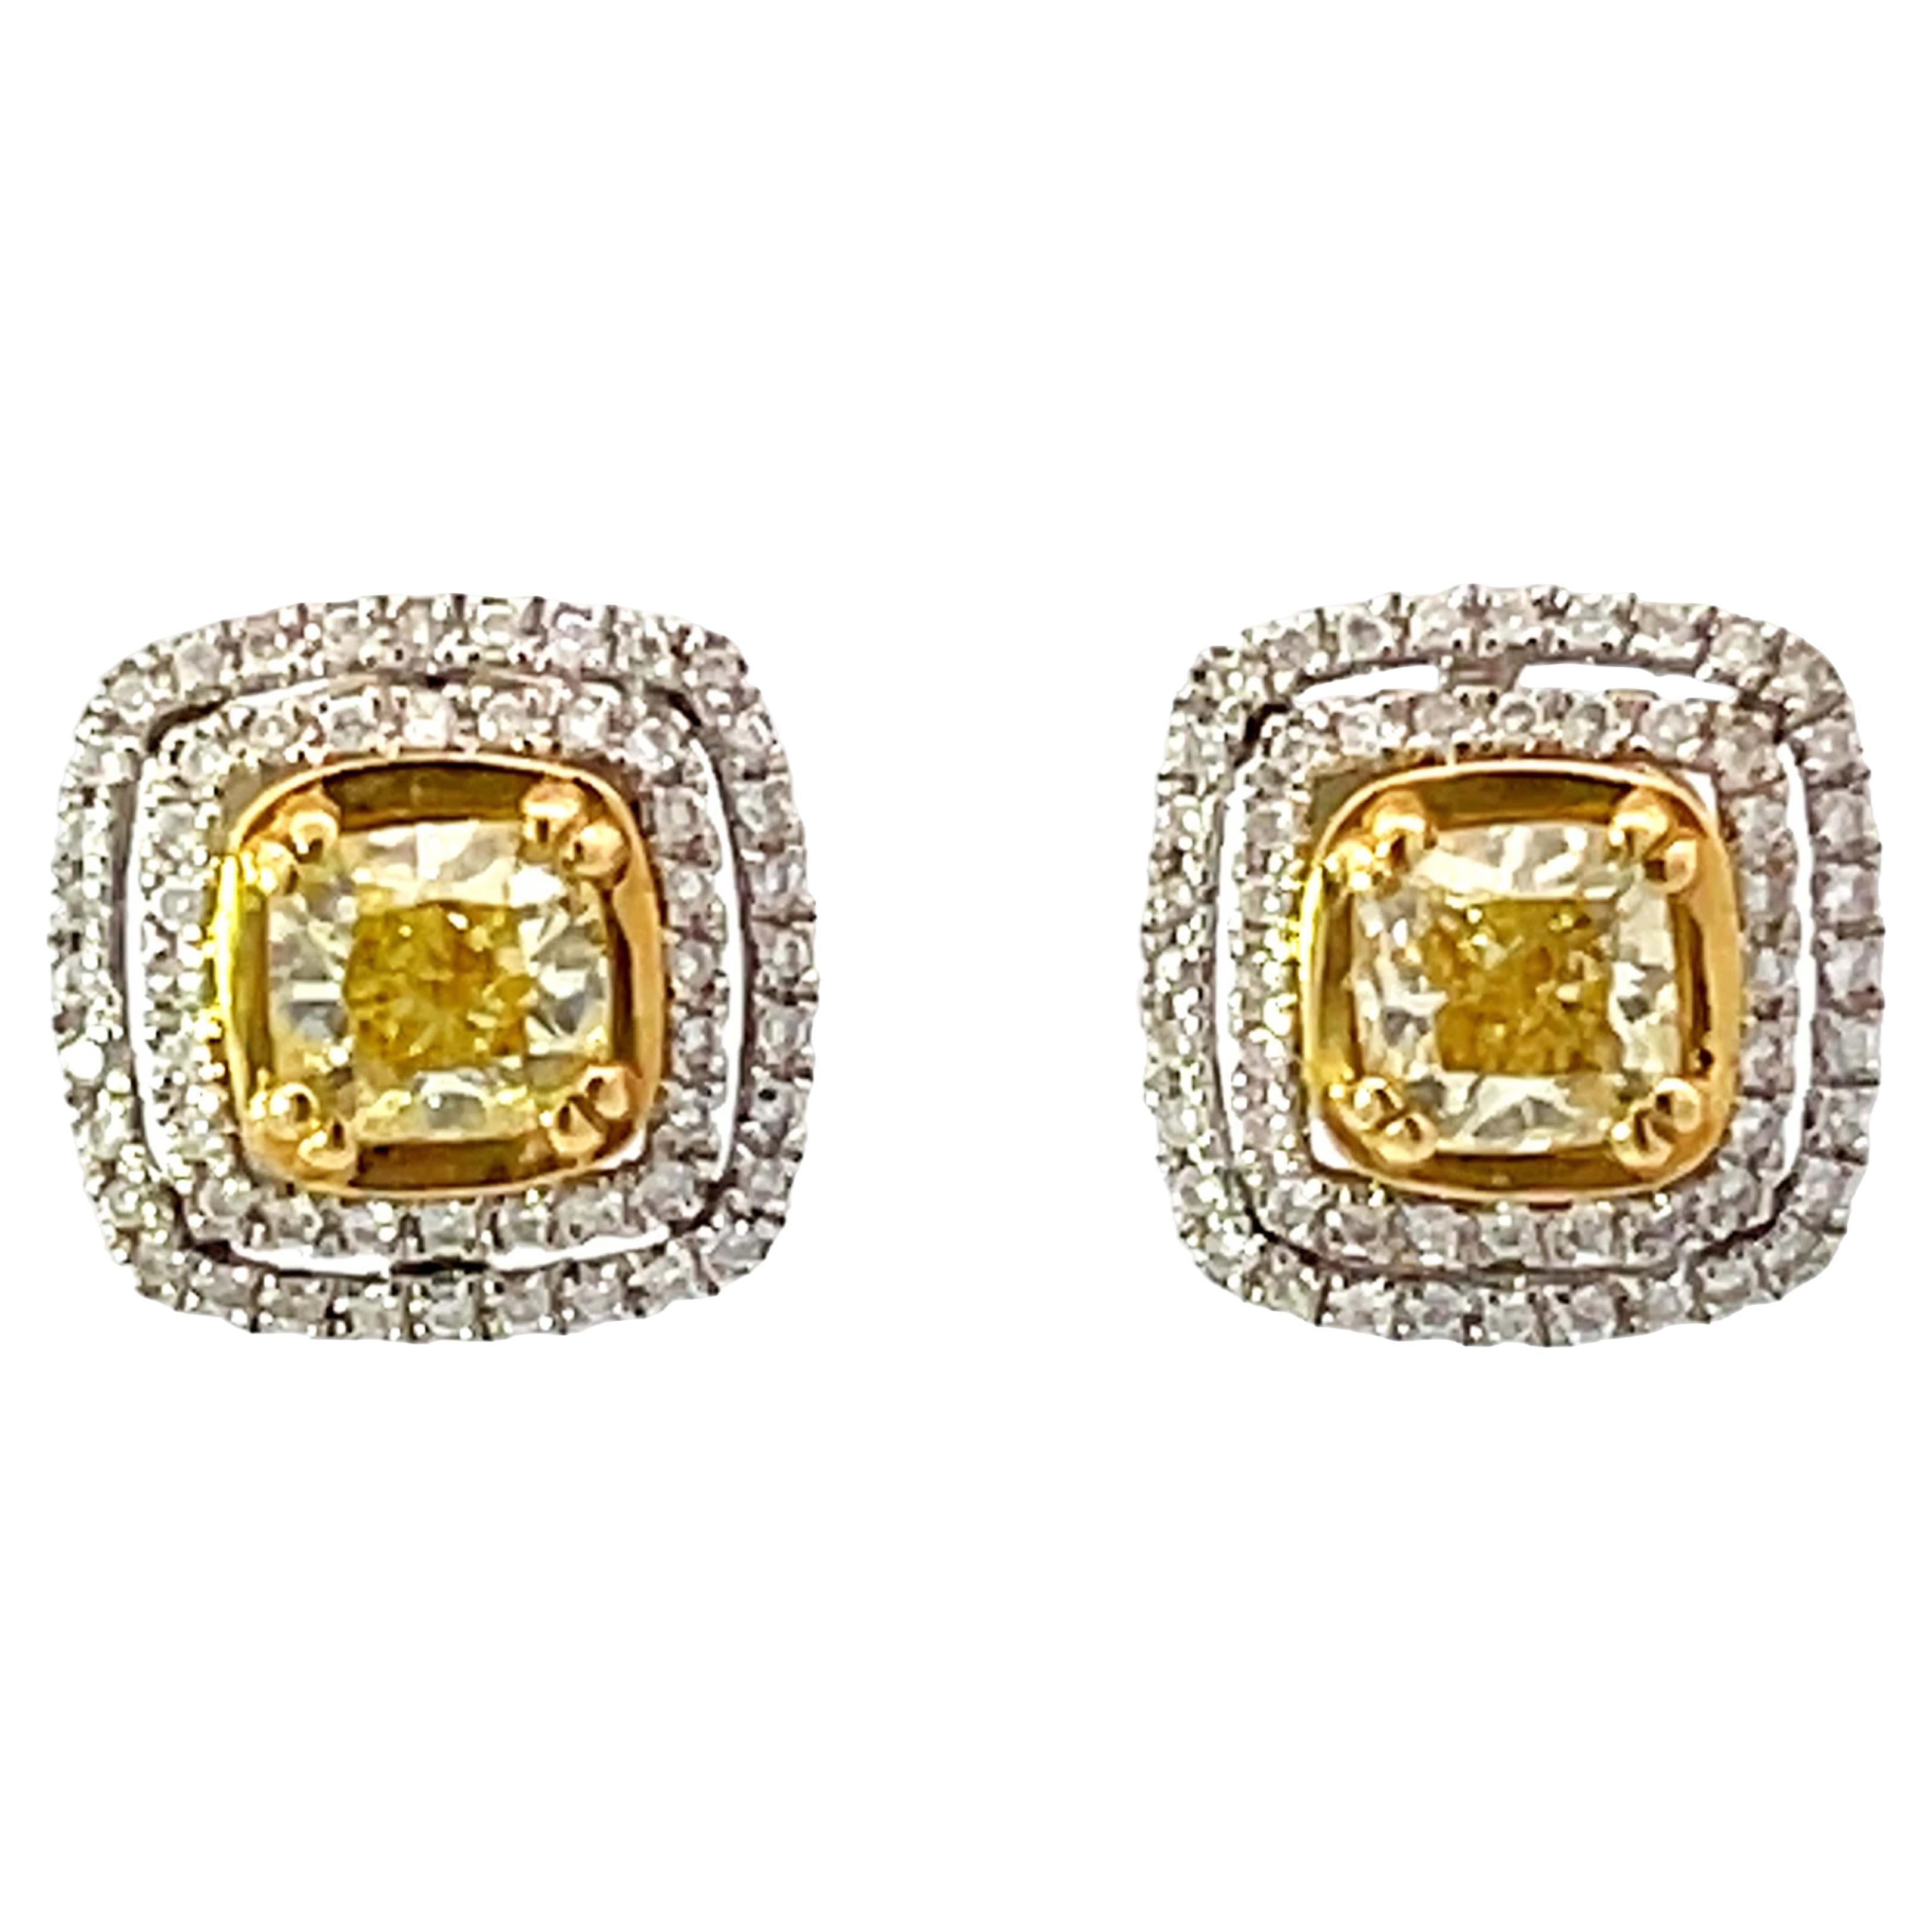 Boucles d'oreilles fantaisie en or 18 carats avec double halo de diamants jaunes taille coussin